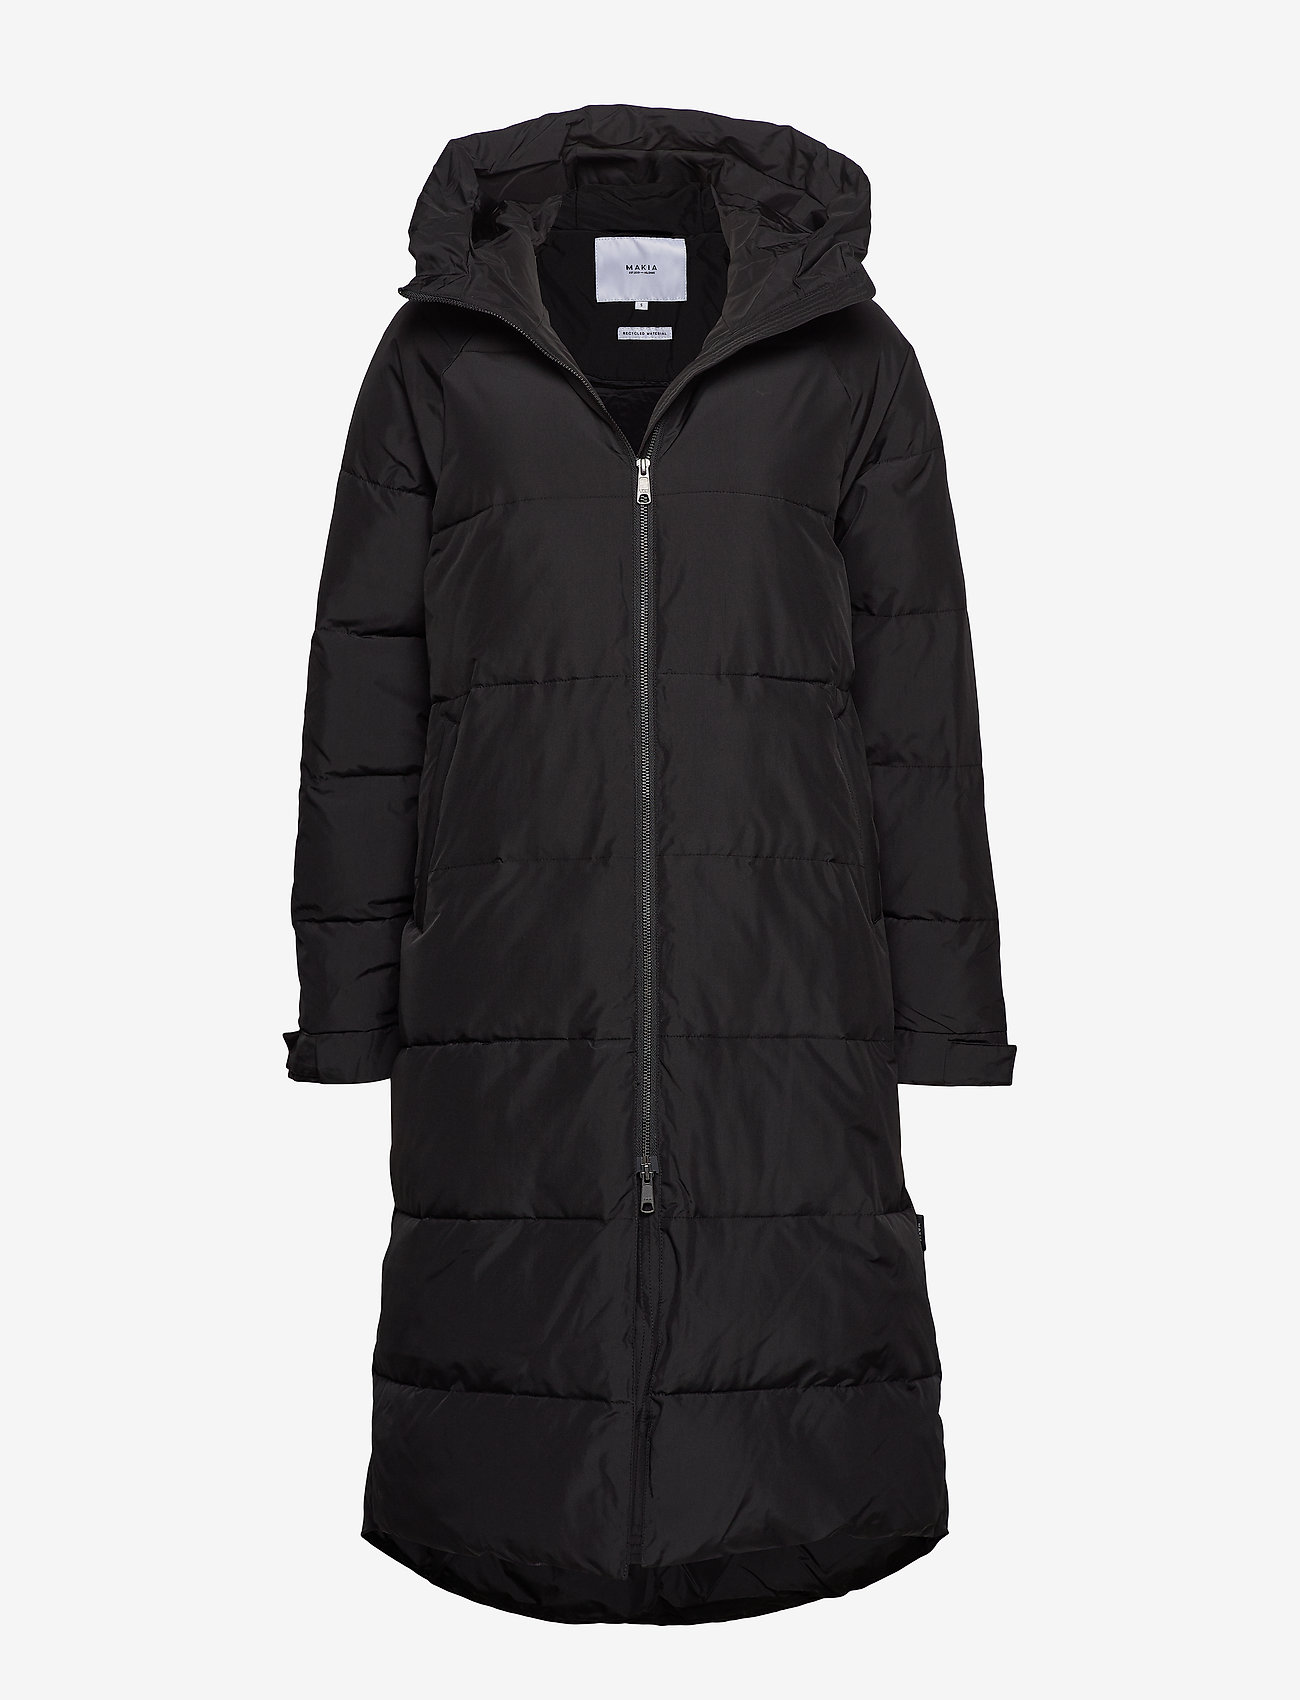 Makia - Meera Parka - winter jackets - black - 0